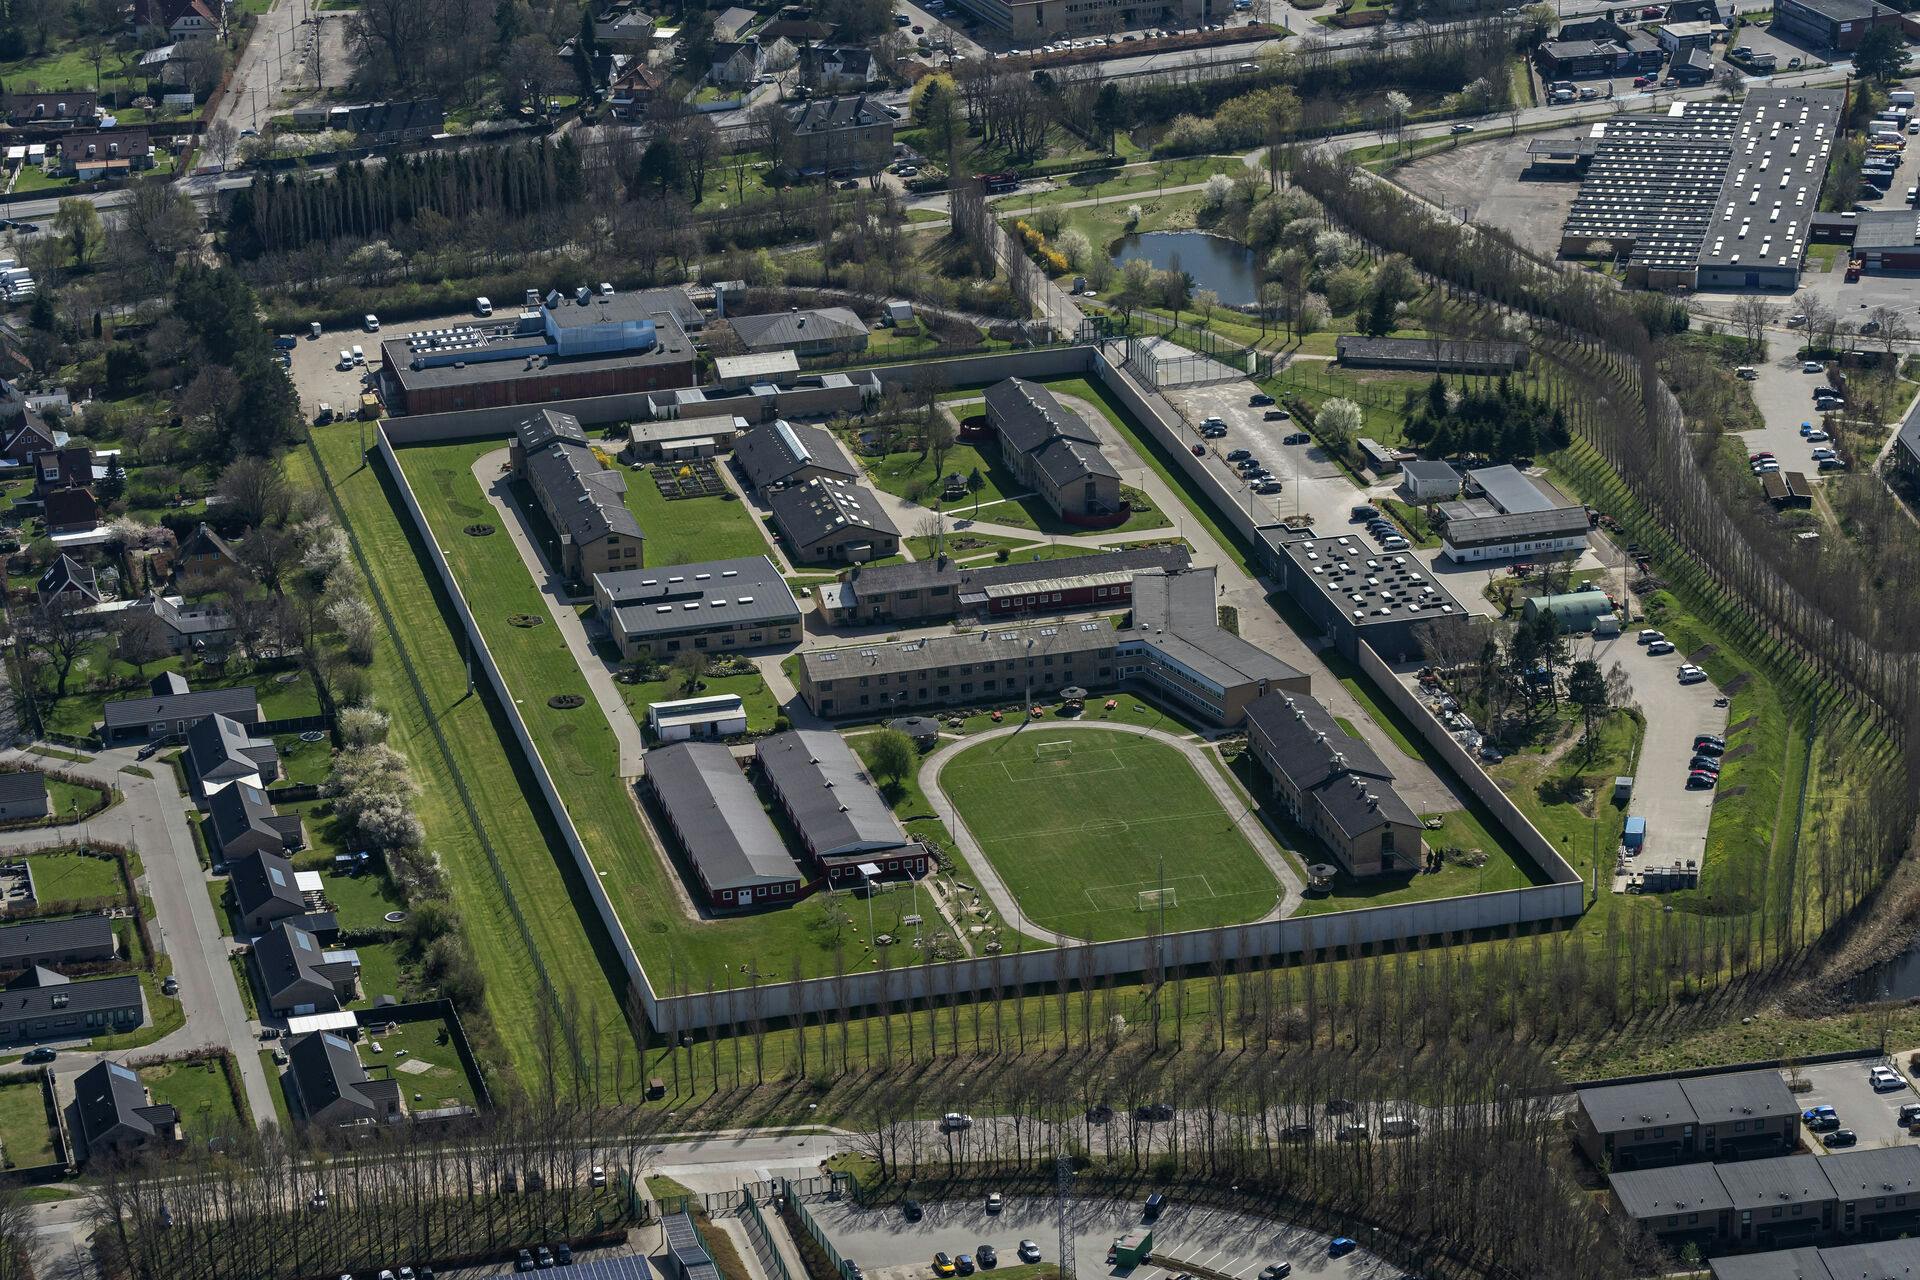 Statsfængslet Herstedvester Fængsel set fra luften den 21. april 2023. Fængslet ligger tæt op af parcelhuse og lejligheder samt Københavne Vestegns politi.